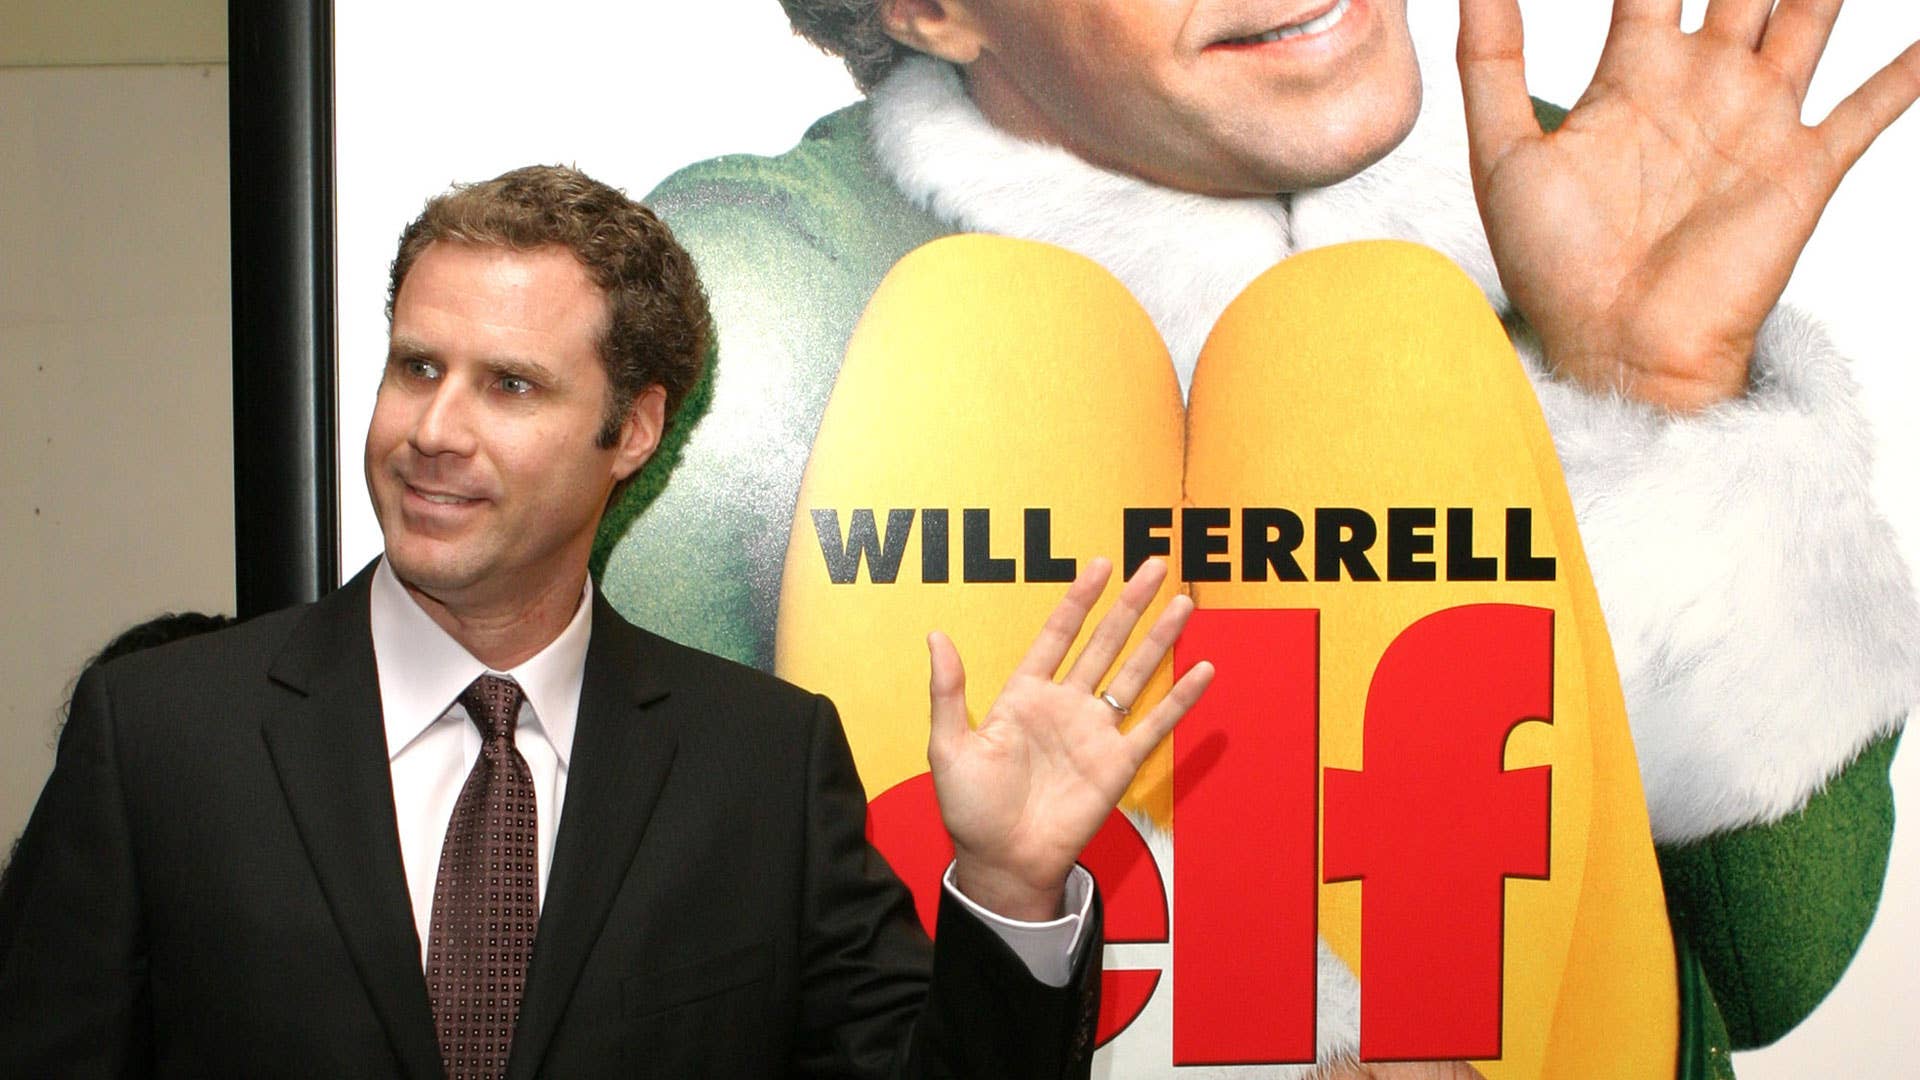 Will Ferrell poses alongside the poster for 'Elf'.